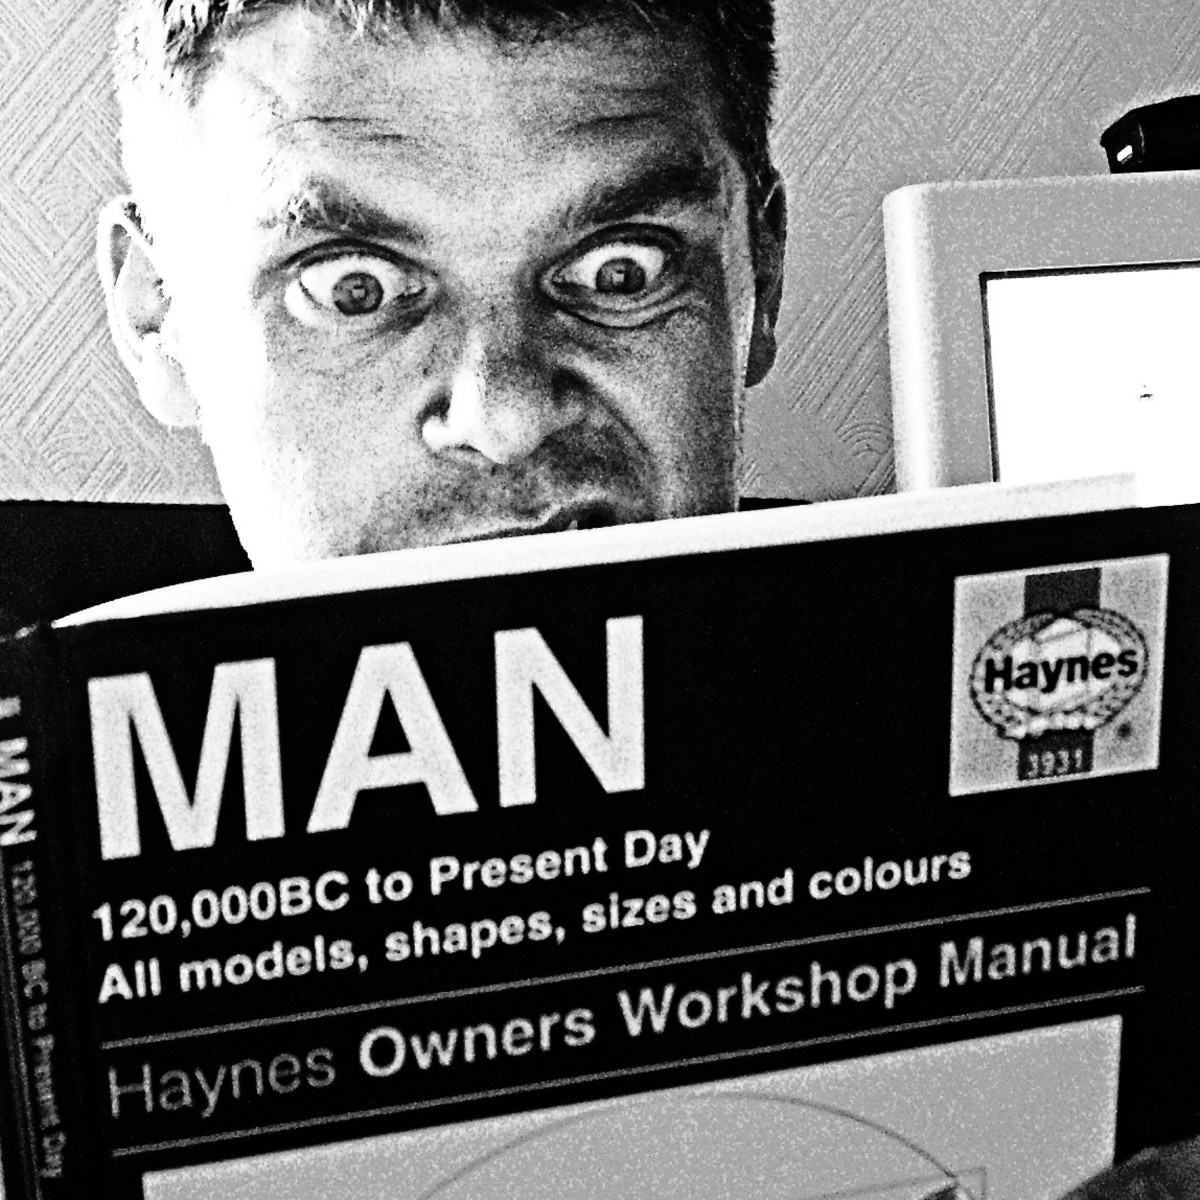 Man needs a manual.